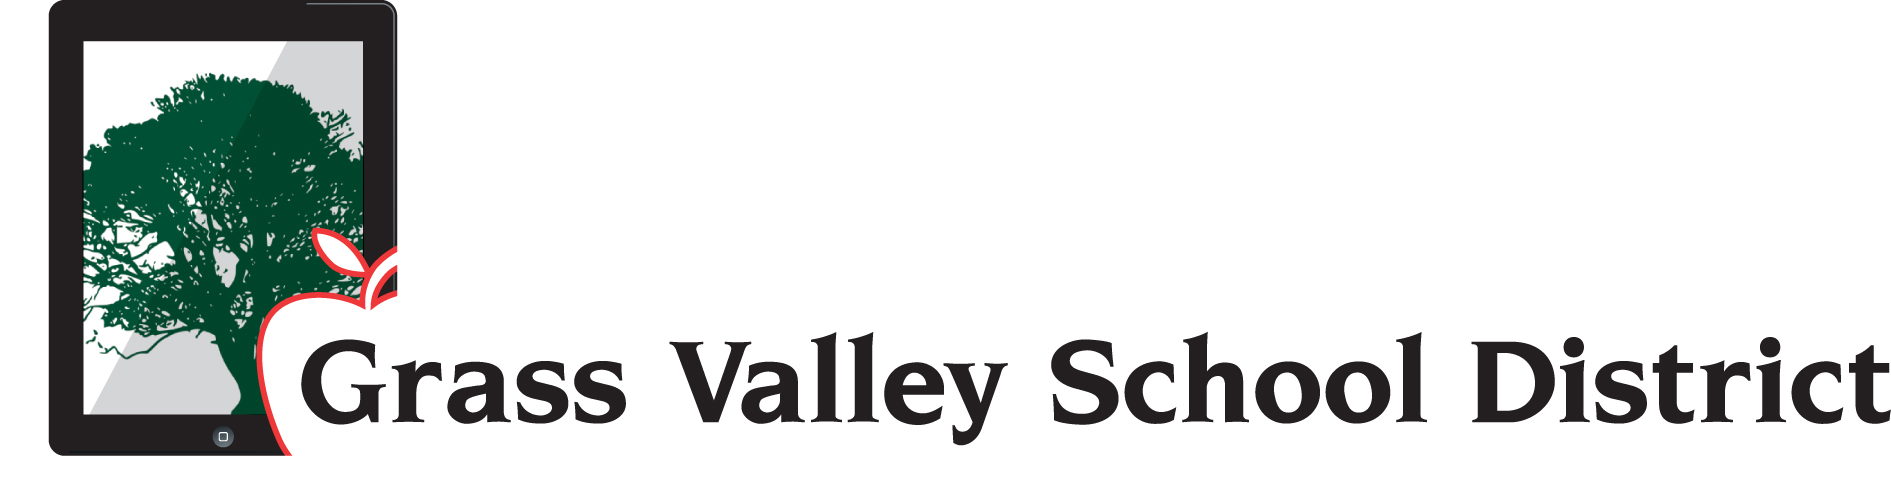 Grass Valley School District Logo